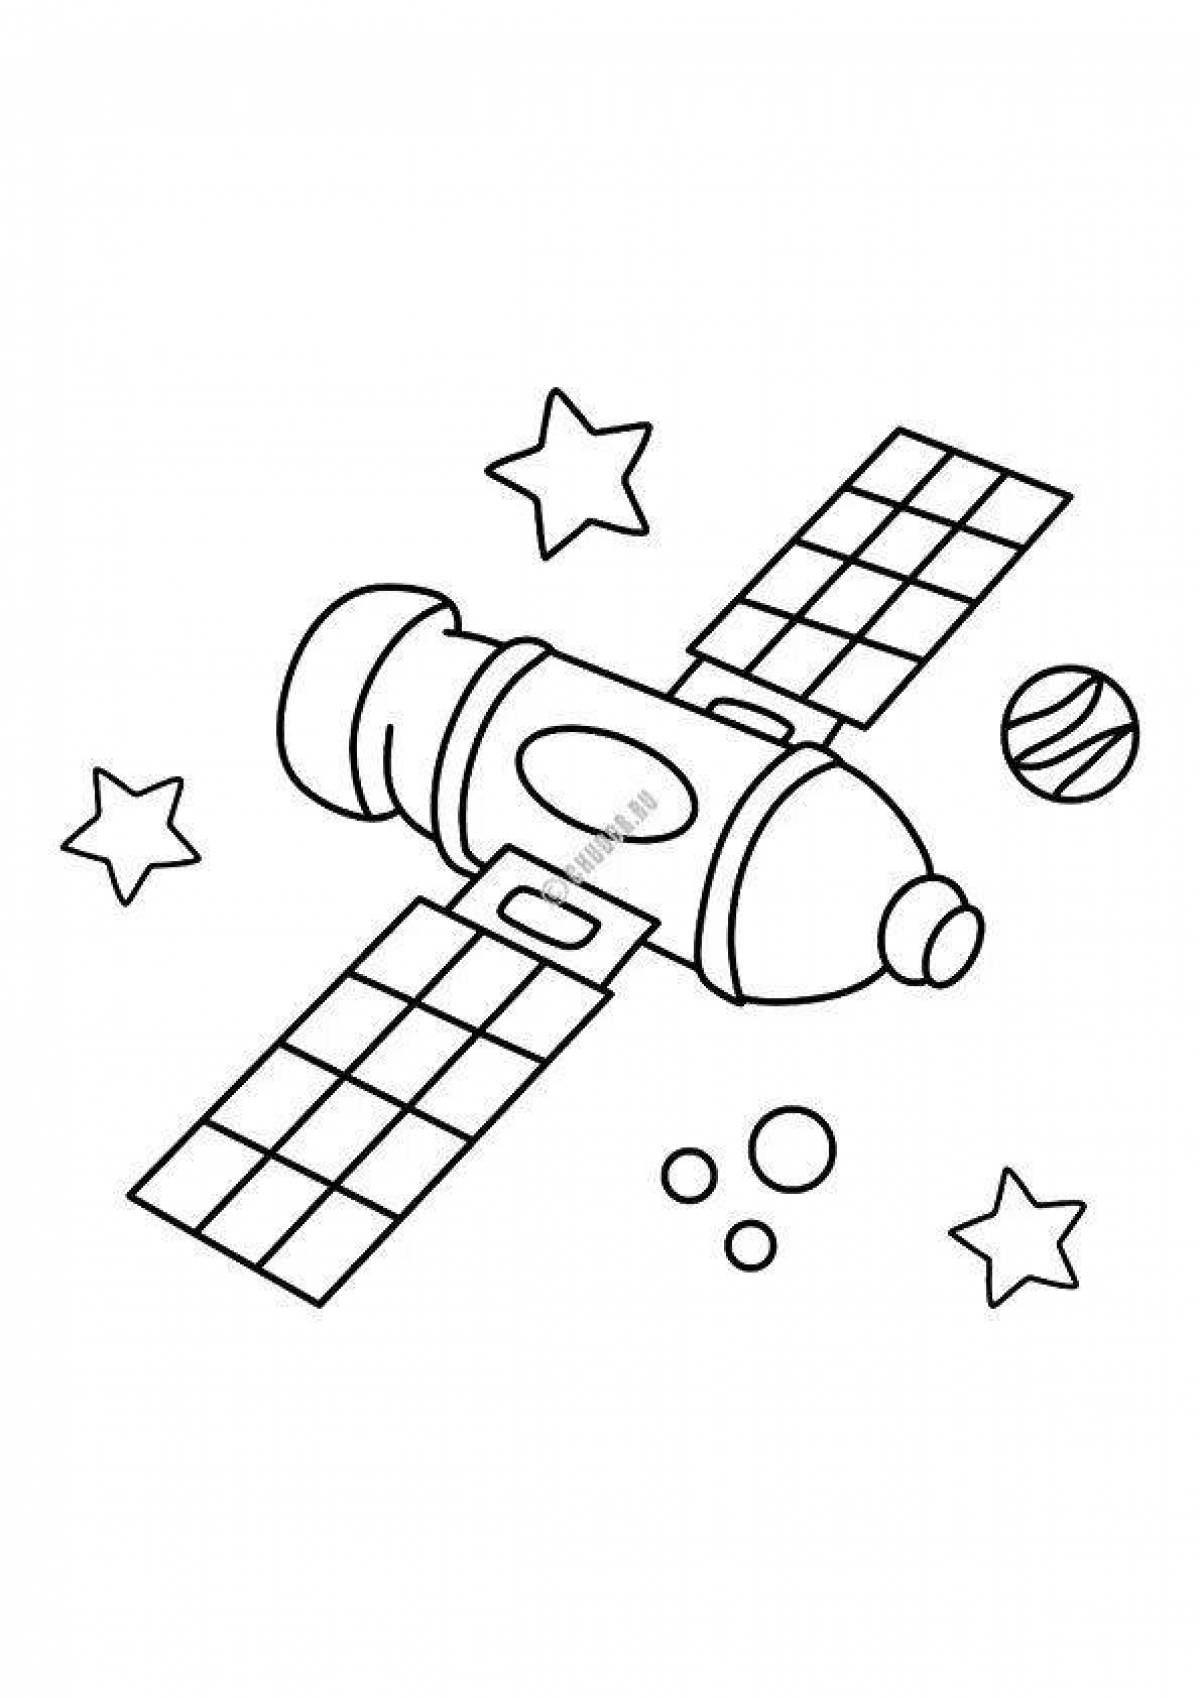 Спутник рисунок для детей. Спутник раскраска для детей. Космический Спутник раскраска. Космос раскраска для детей. Раскраска для малышей. Космос.